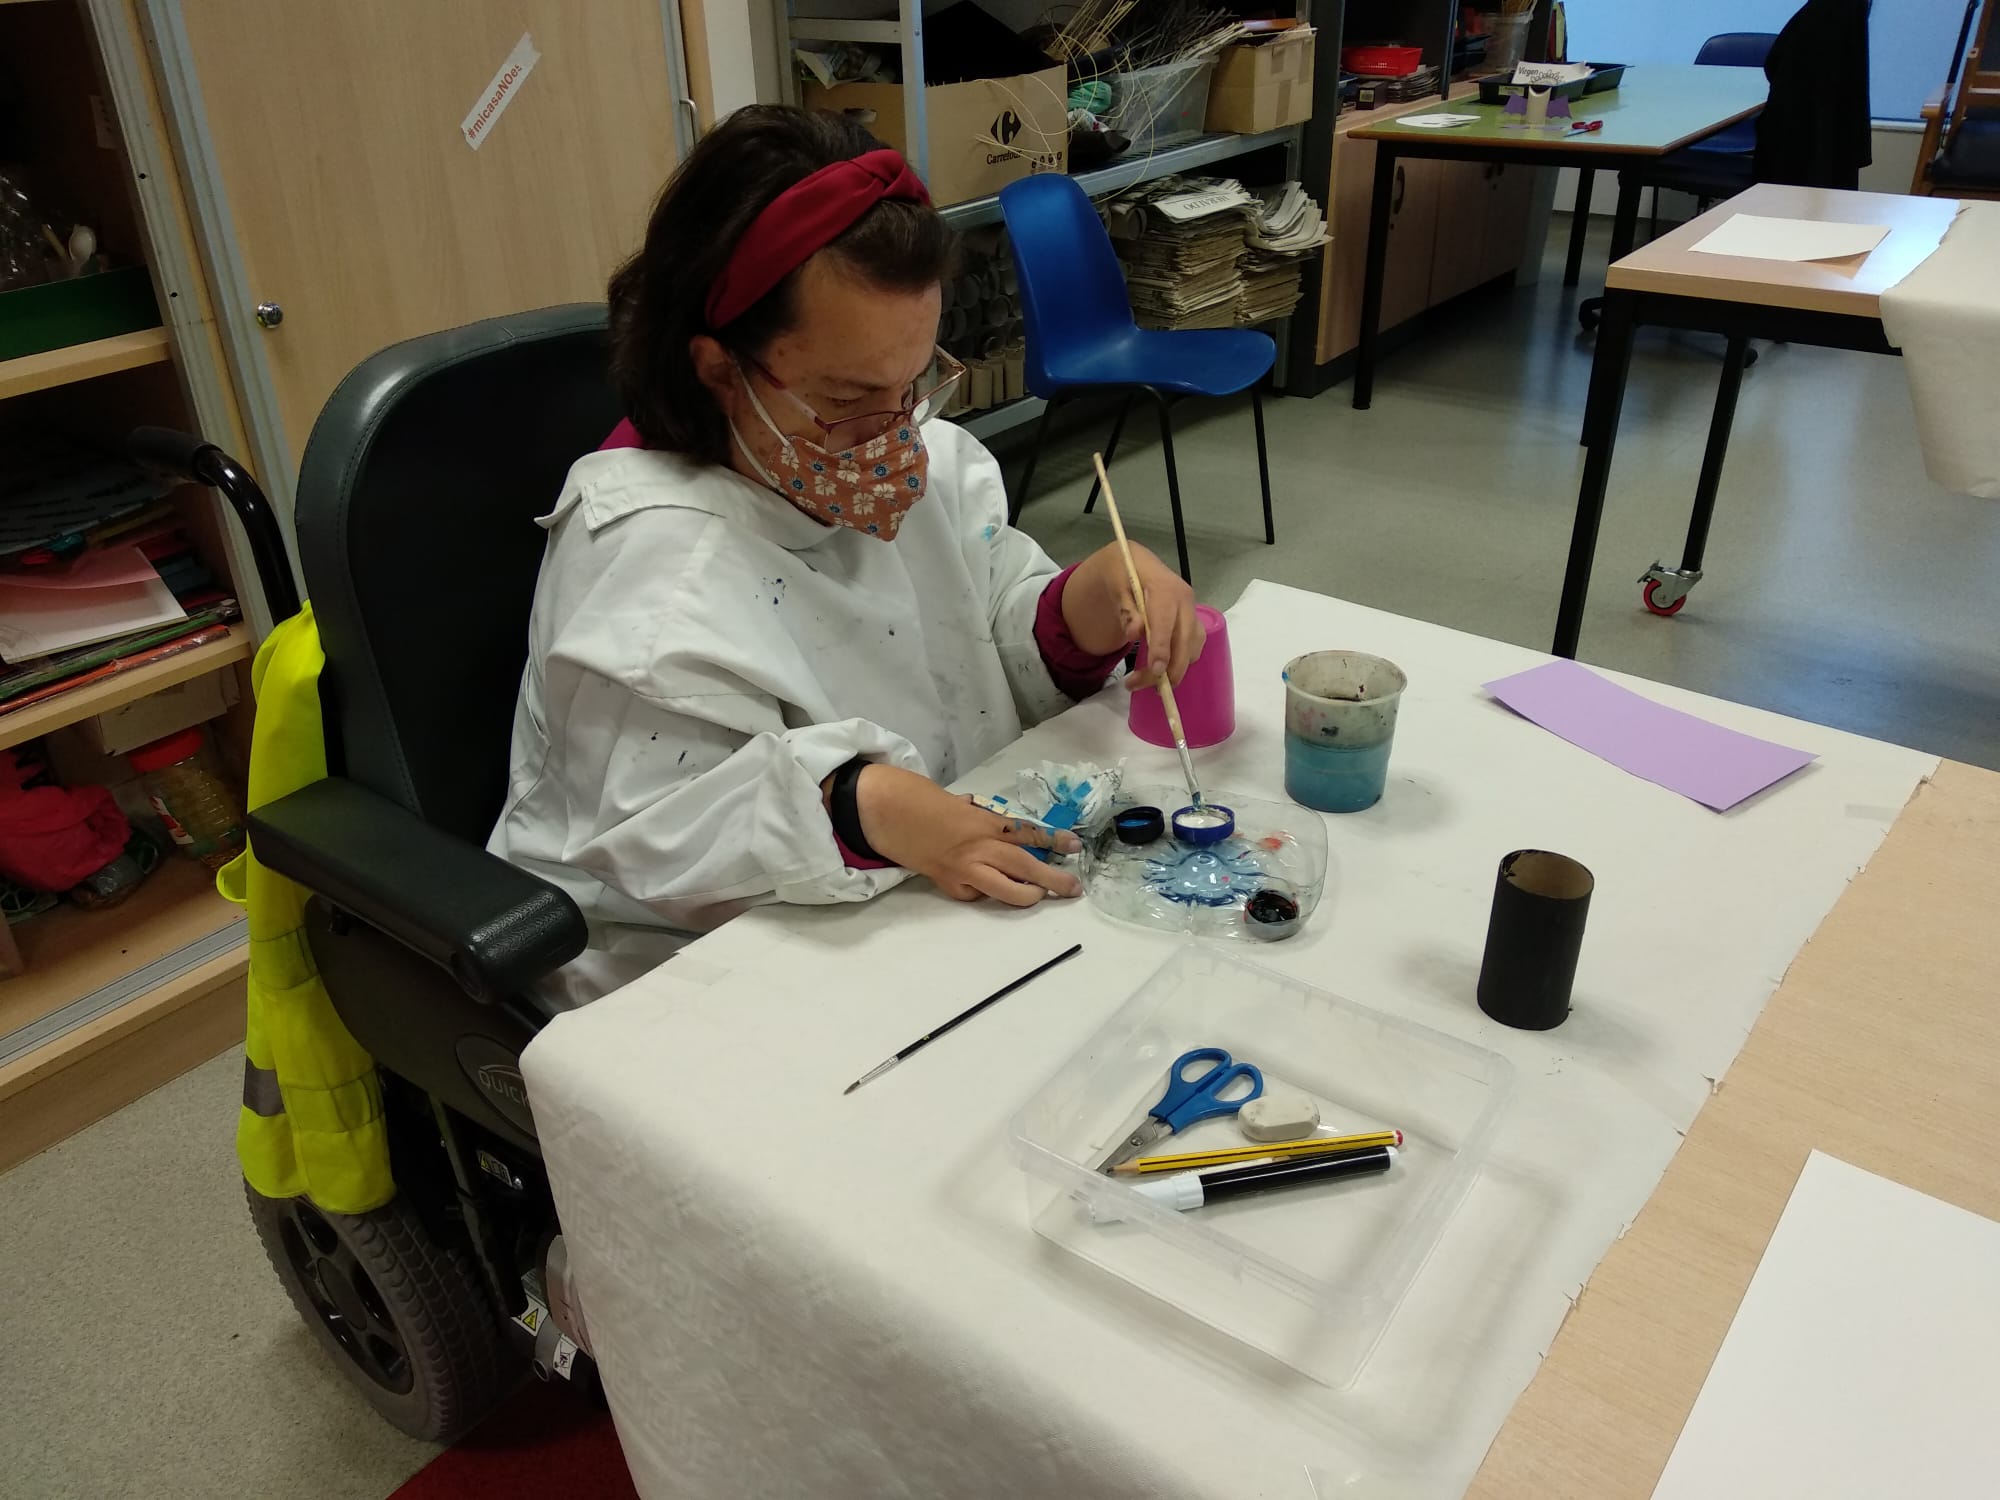 Una mujer en silla de ruedas pintando con pincel en un taller de manualidades